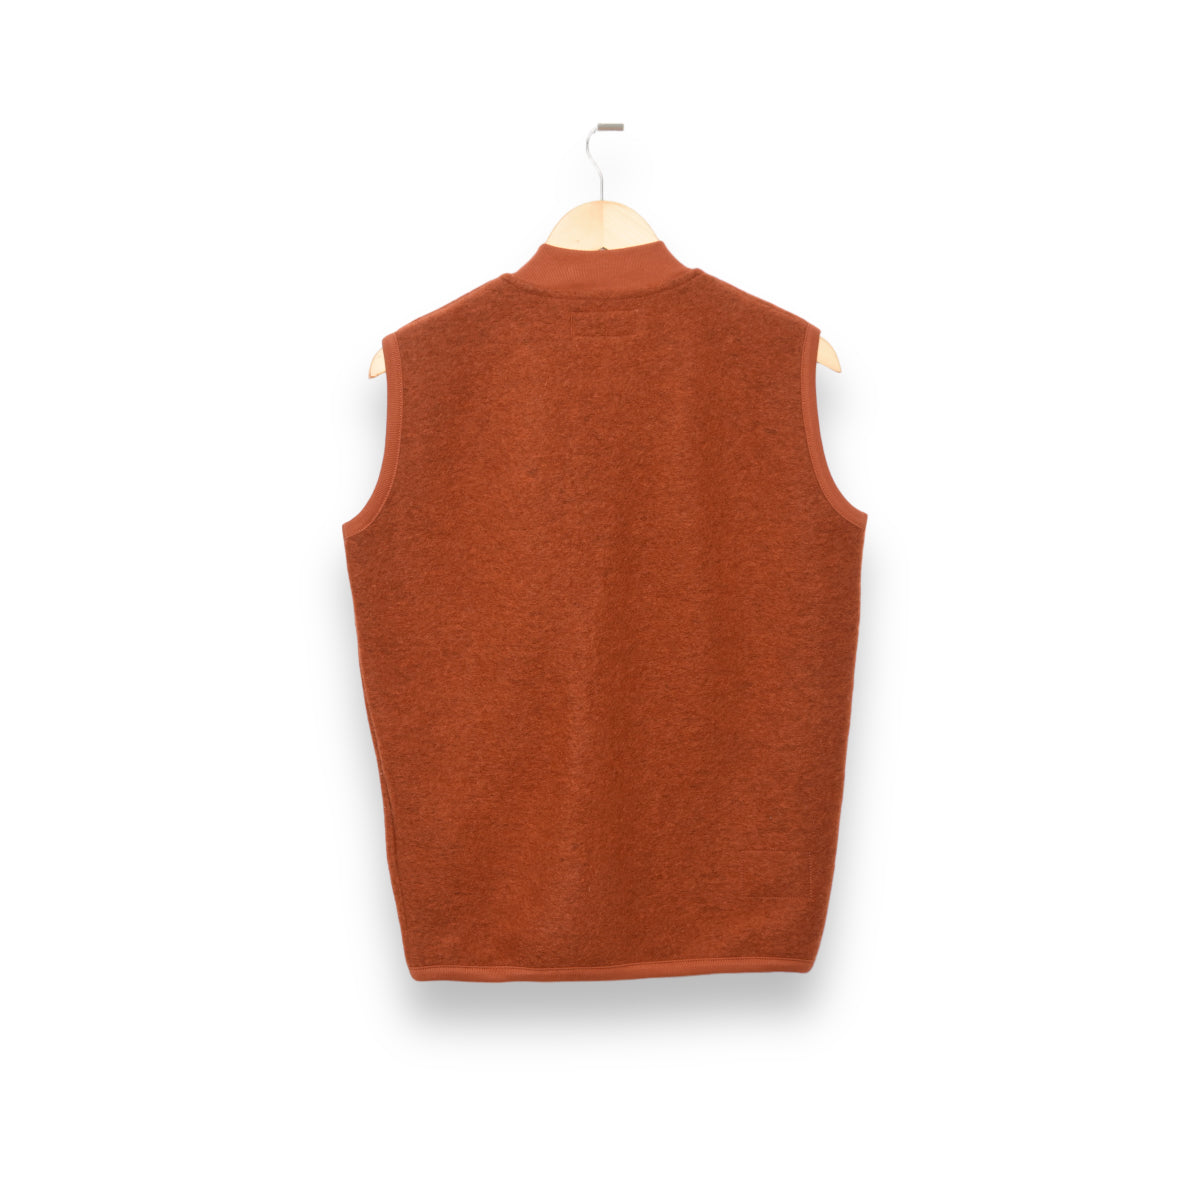 Universal Works Zip Waistcoat 29711 Wool Fleece orange